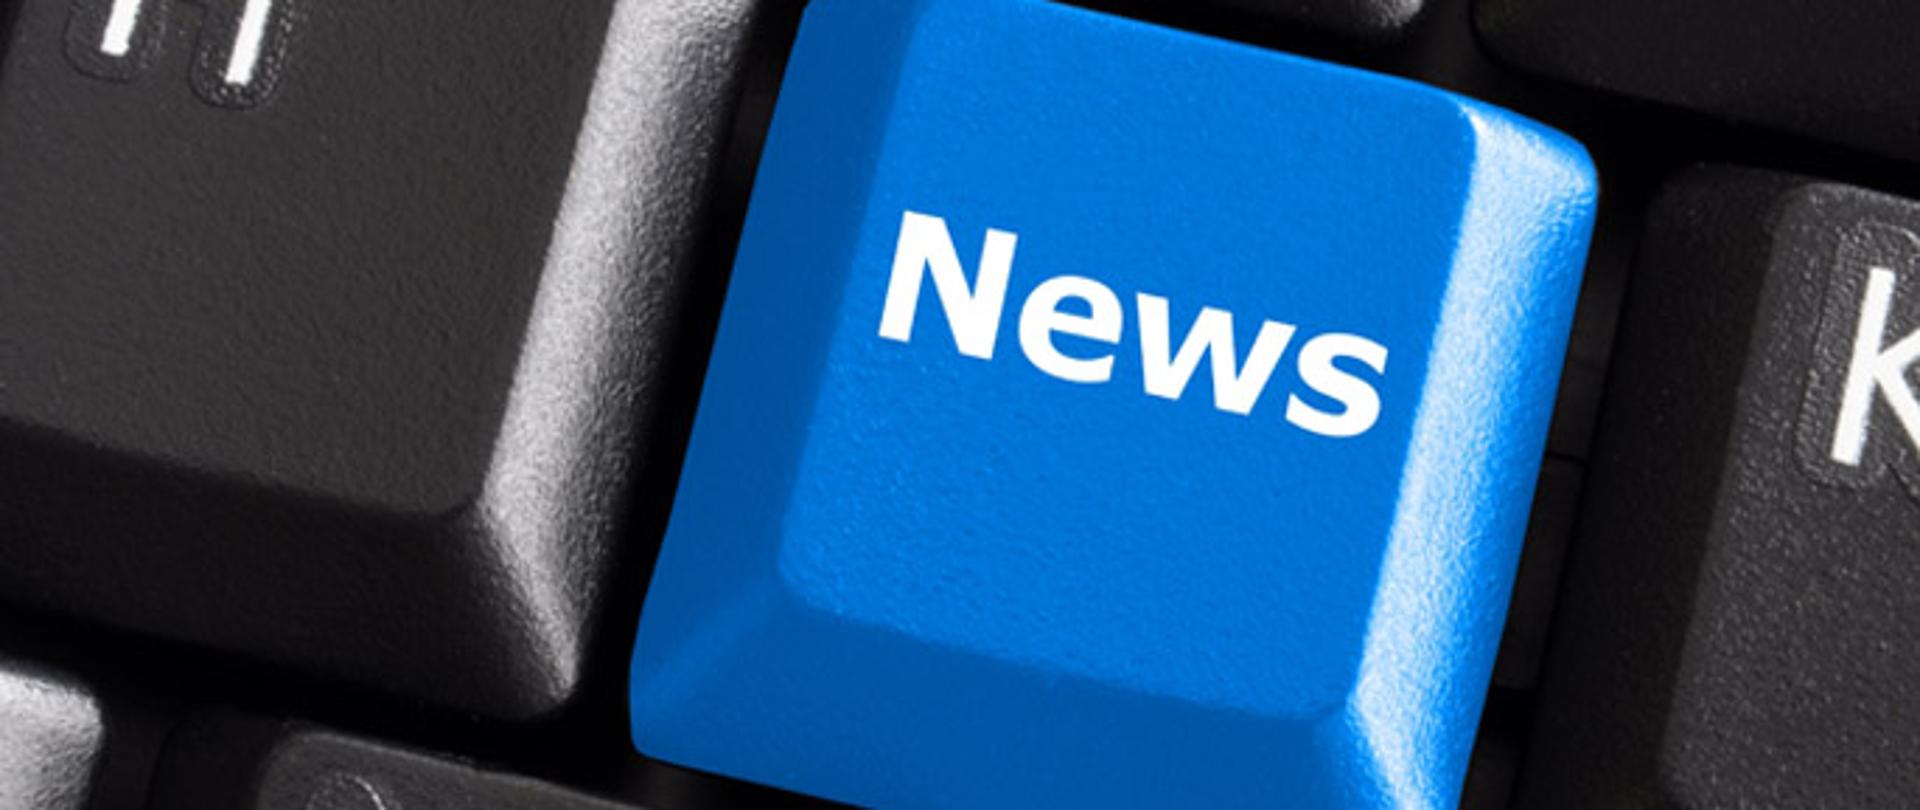 zdjęcie pokazujące wycinek klawiatury komputerowej na którym jeden przycisk jest niebieski z napisem "news" symbolizujący najnowsze wiadomosci. 